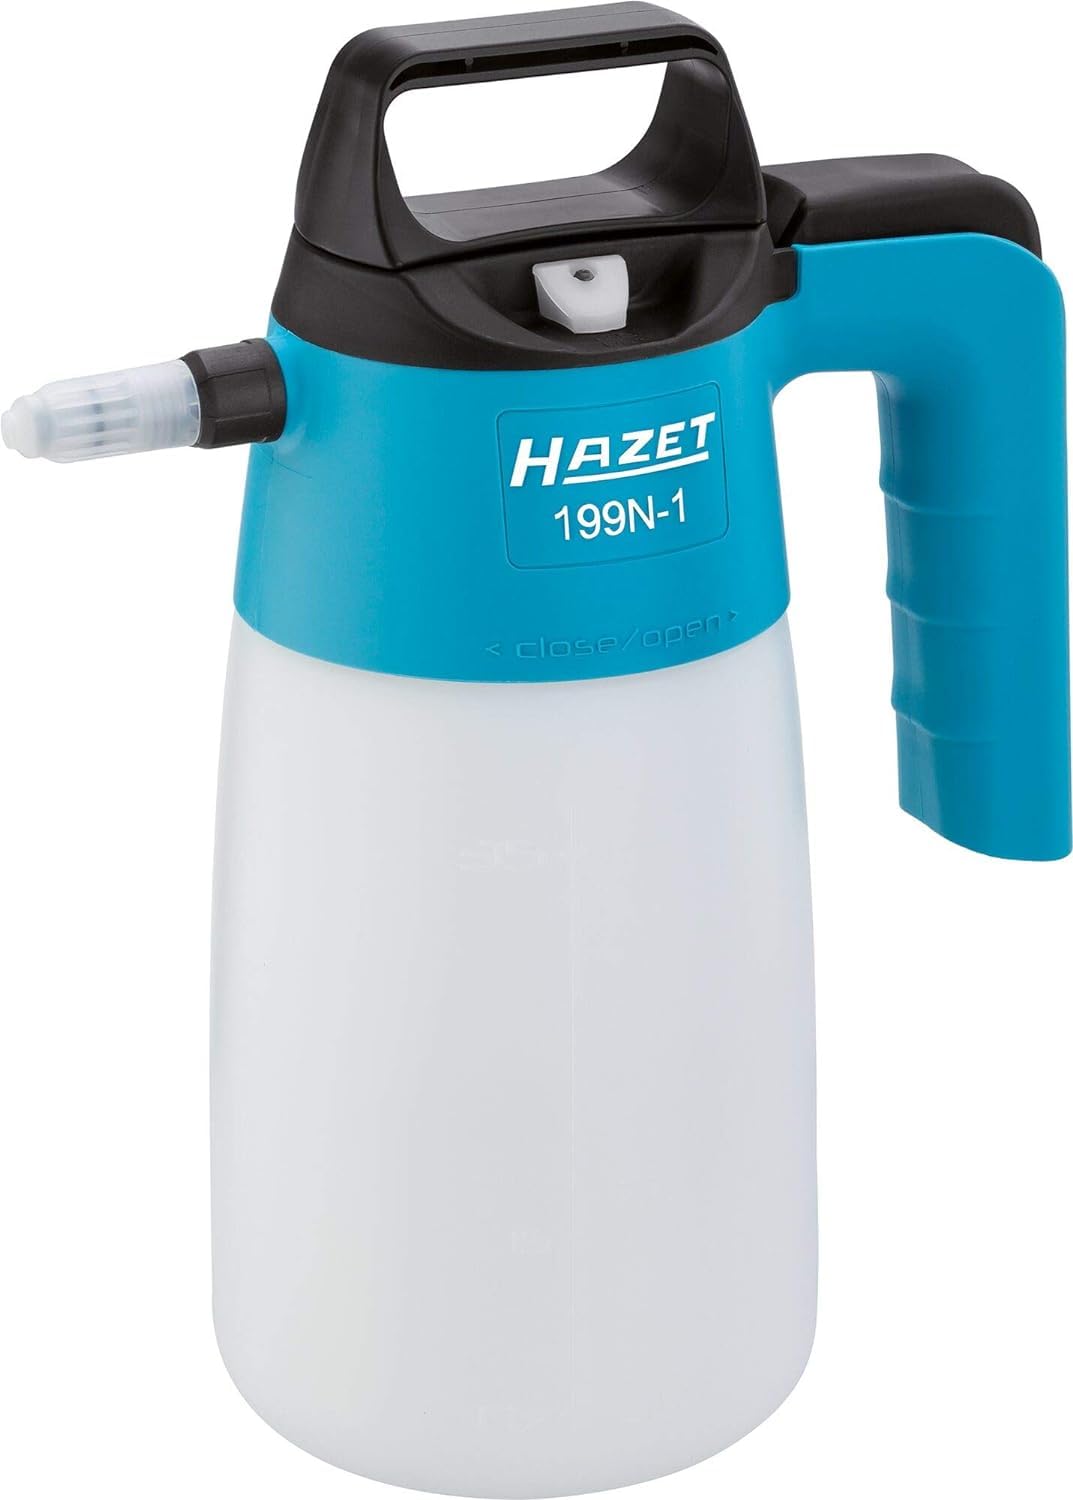 HAZET Pumpsprühflasche 199N-1 - Sprühflasche zur Desinfektion von Flächen, gekapselter Pumpmechanismus, besonders hohe Beständigkeit gegen Chemikalien, 1 L Nutzinhalt von HAZET